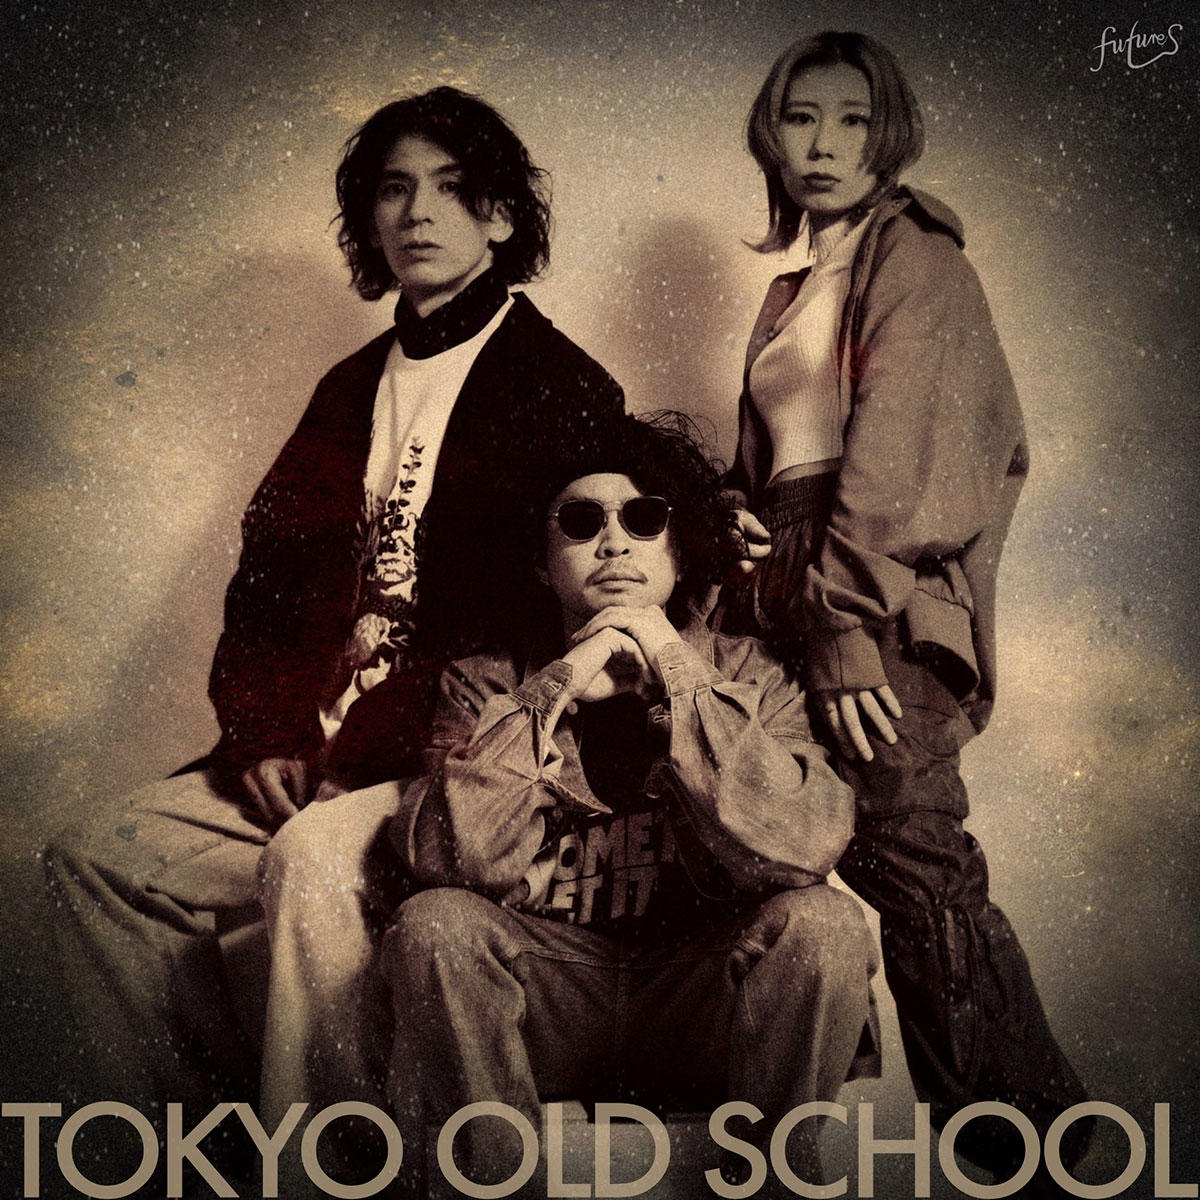 TOKYO-OLD-SCHOOL_futures_jk_20230222.jpg